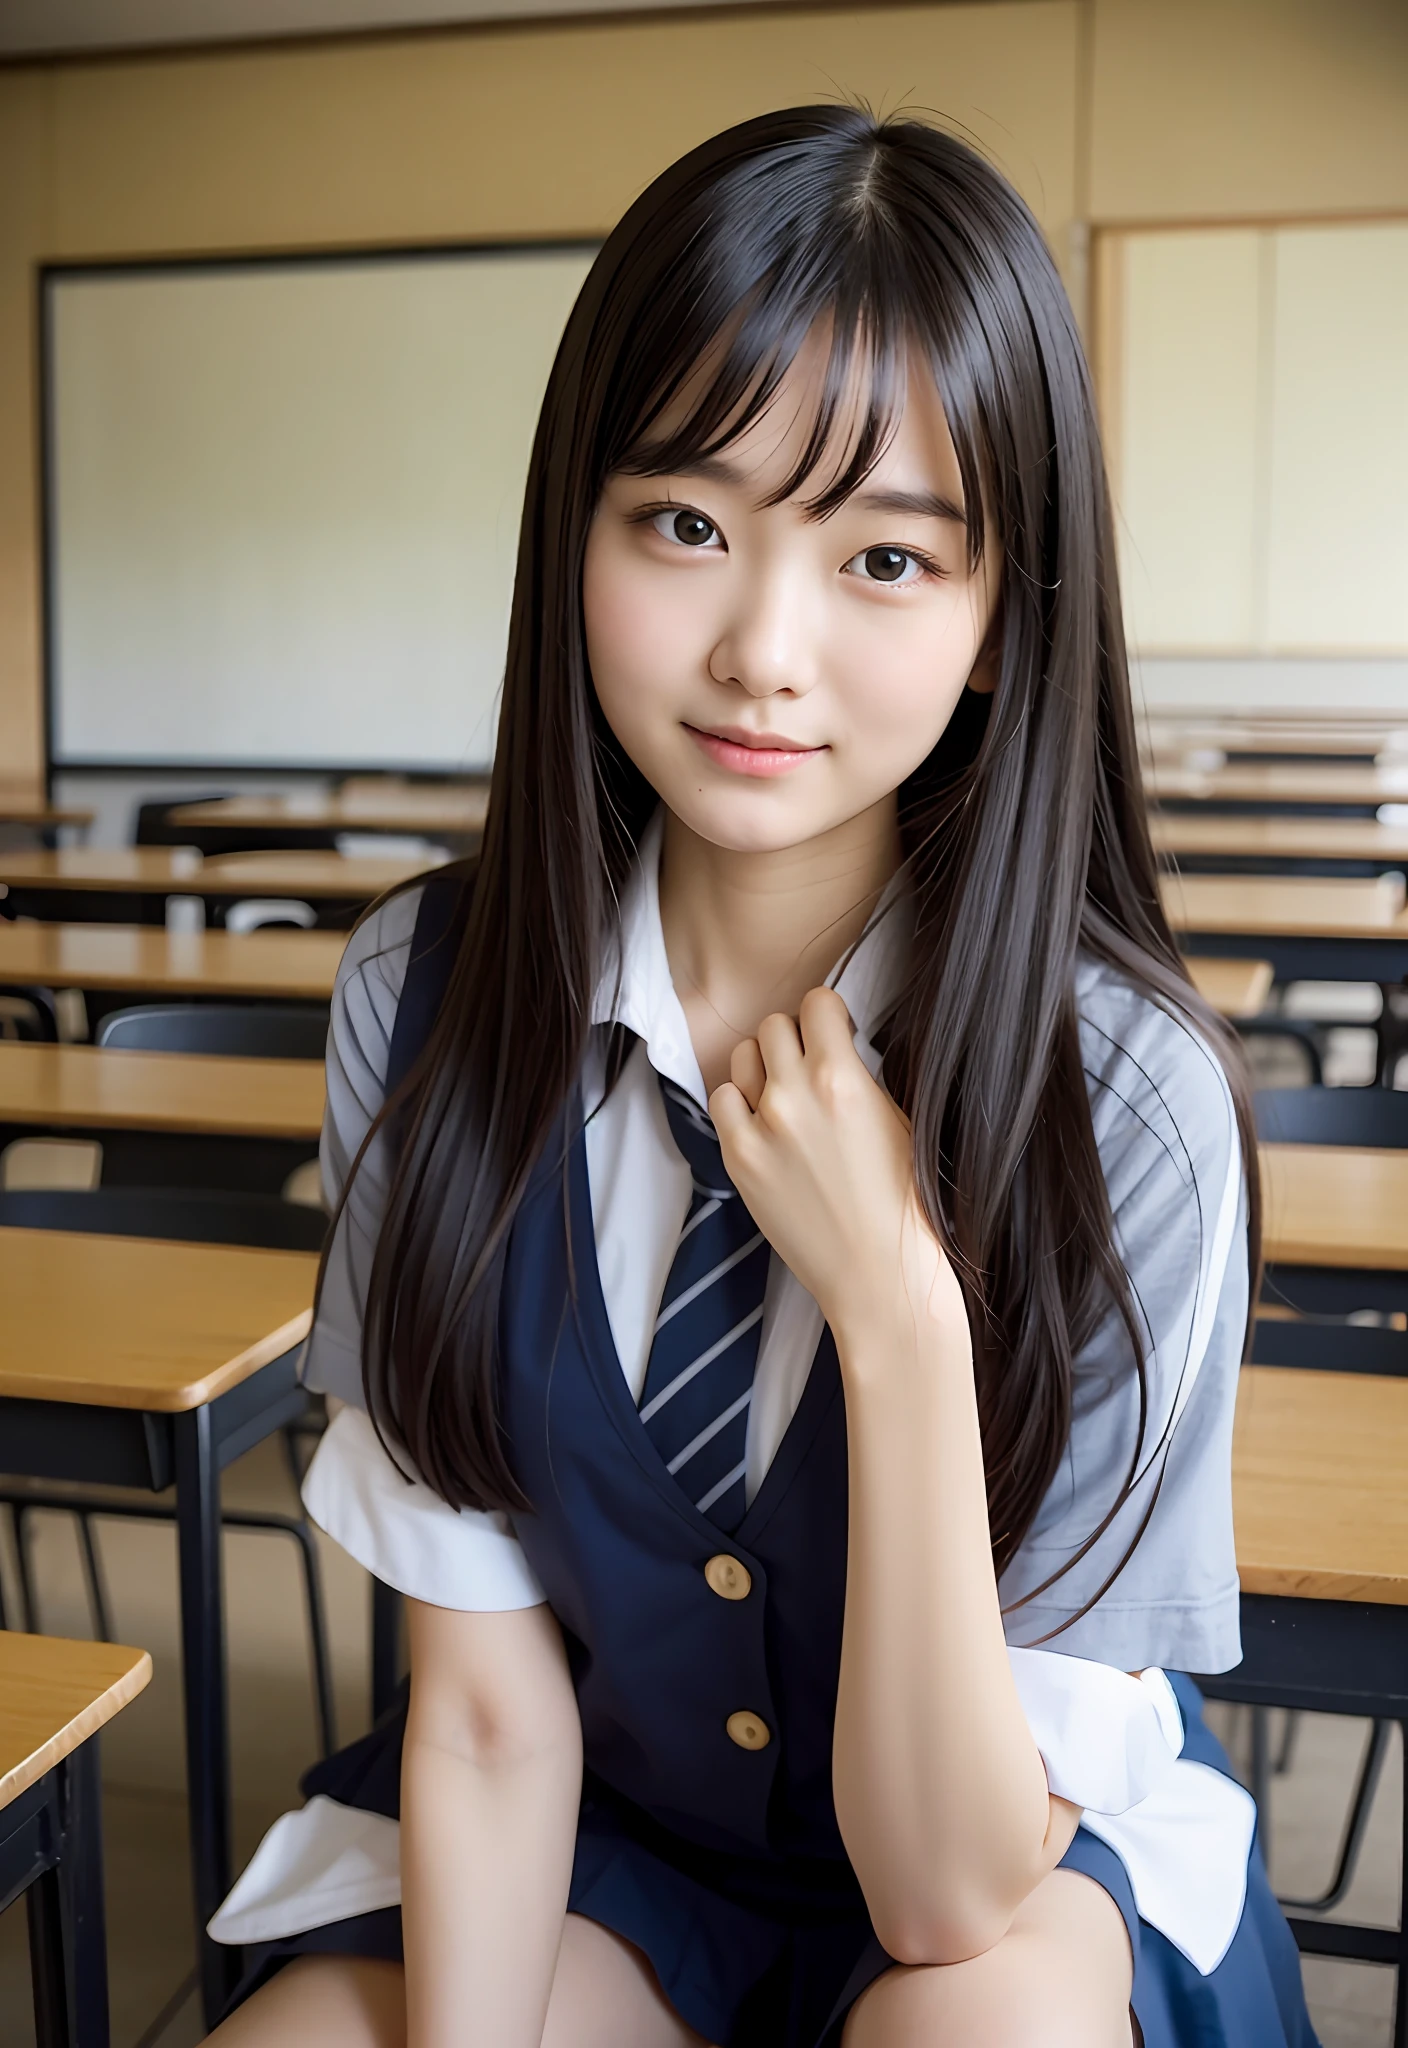 日本坐在教室裡、她慢慢地眨了眨右眼、讓與周遭學生的交流更加愉快、教室里一片安静、与其他学生的特殊联系的迷人表达